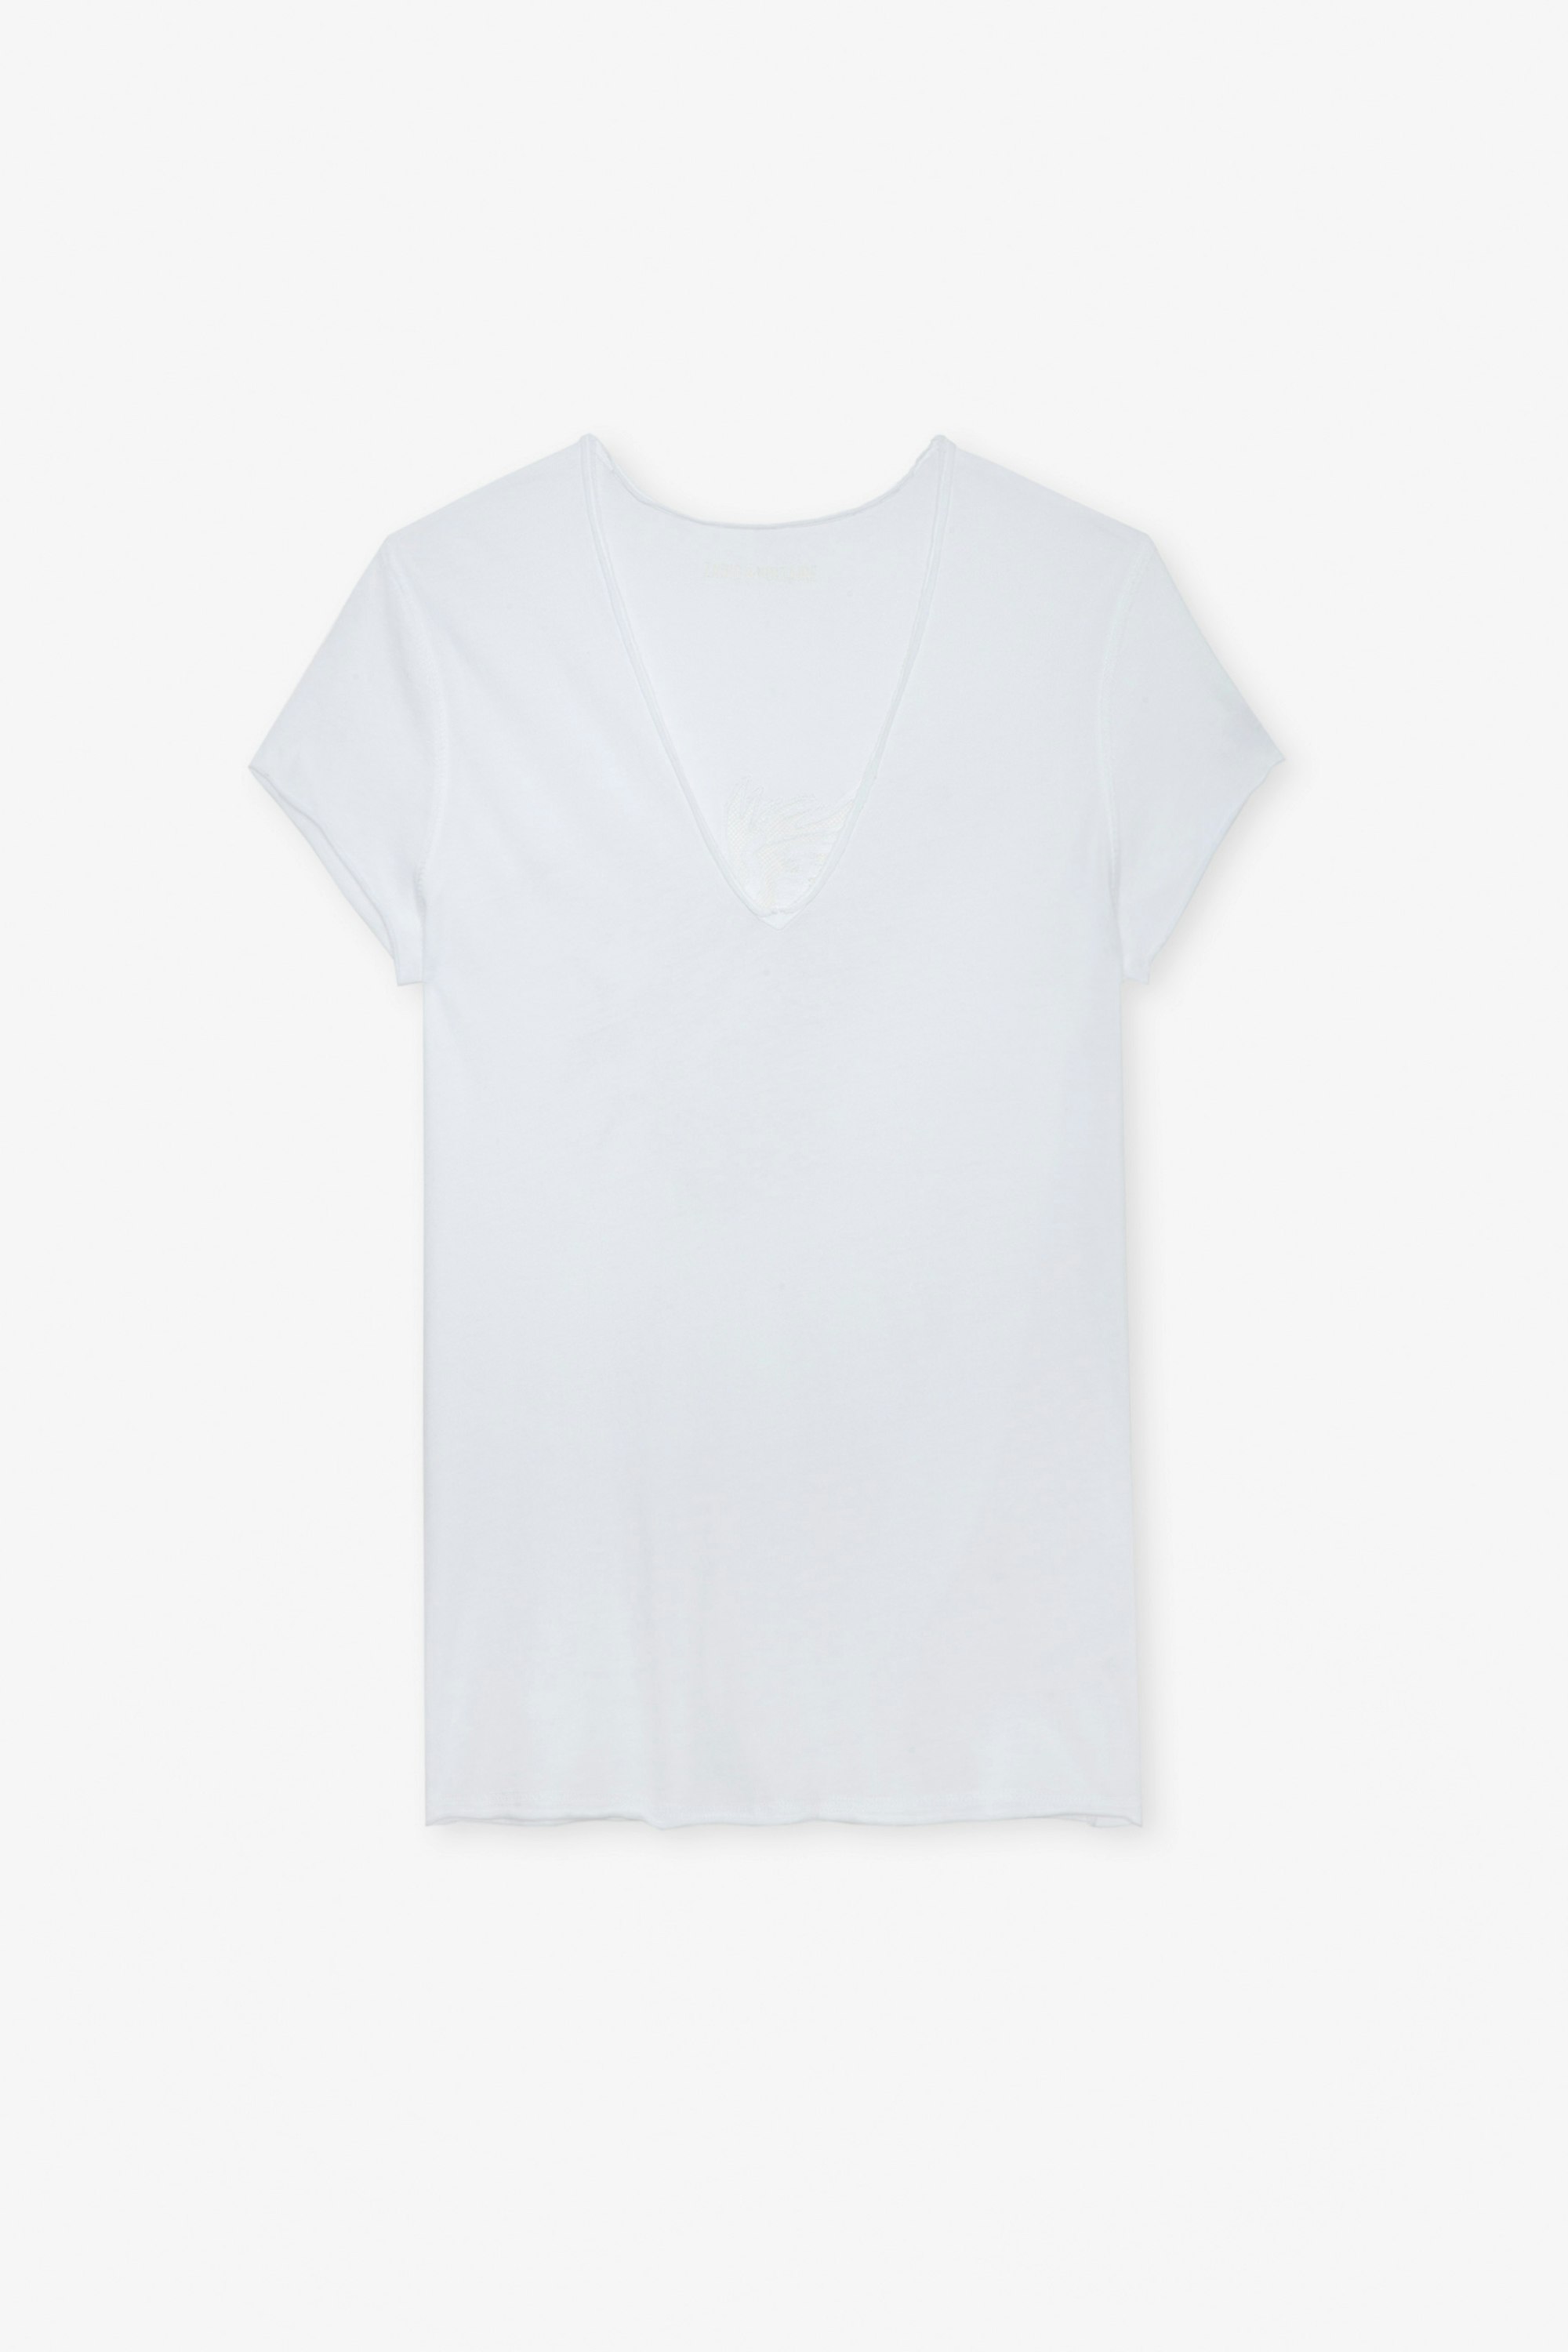 Camiseta Story Fishnet - Camiseta blanca de algodón con bordado de águila en la parte trasera para mujer.